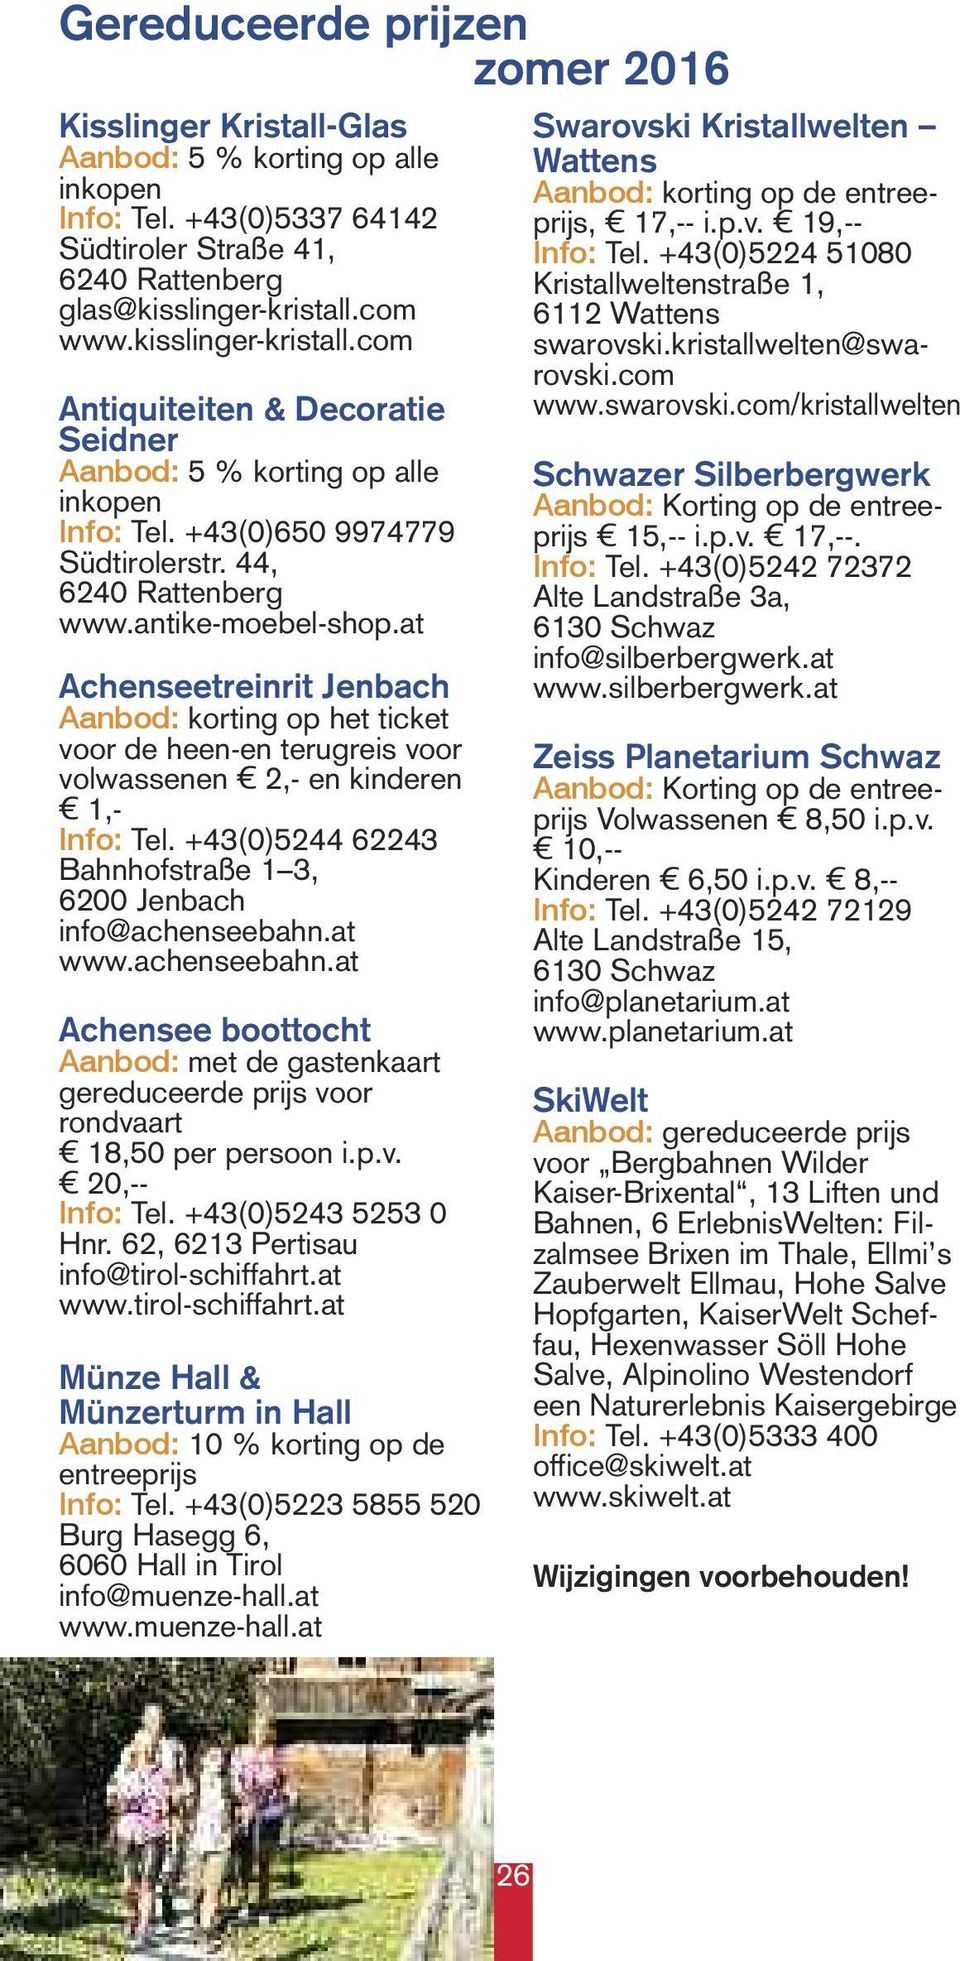 at Achenseetreinrit Jenbach Aanbod: korting op het ticket voor de heen-en terugreis voor volwassenen 2,- en kinderen 1,- Info: Tel. +43(0)5244 62243 Bahnhofstraße 1 3, 6200 Jenbach info@achenseebahn.